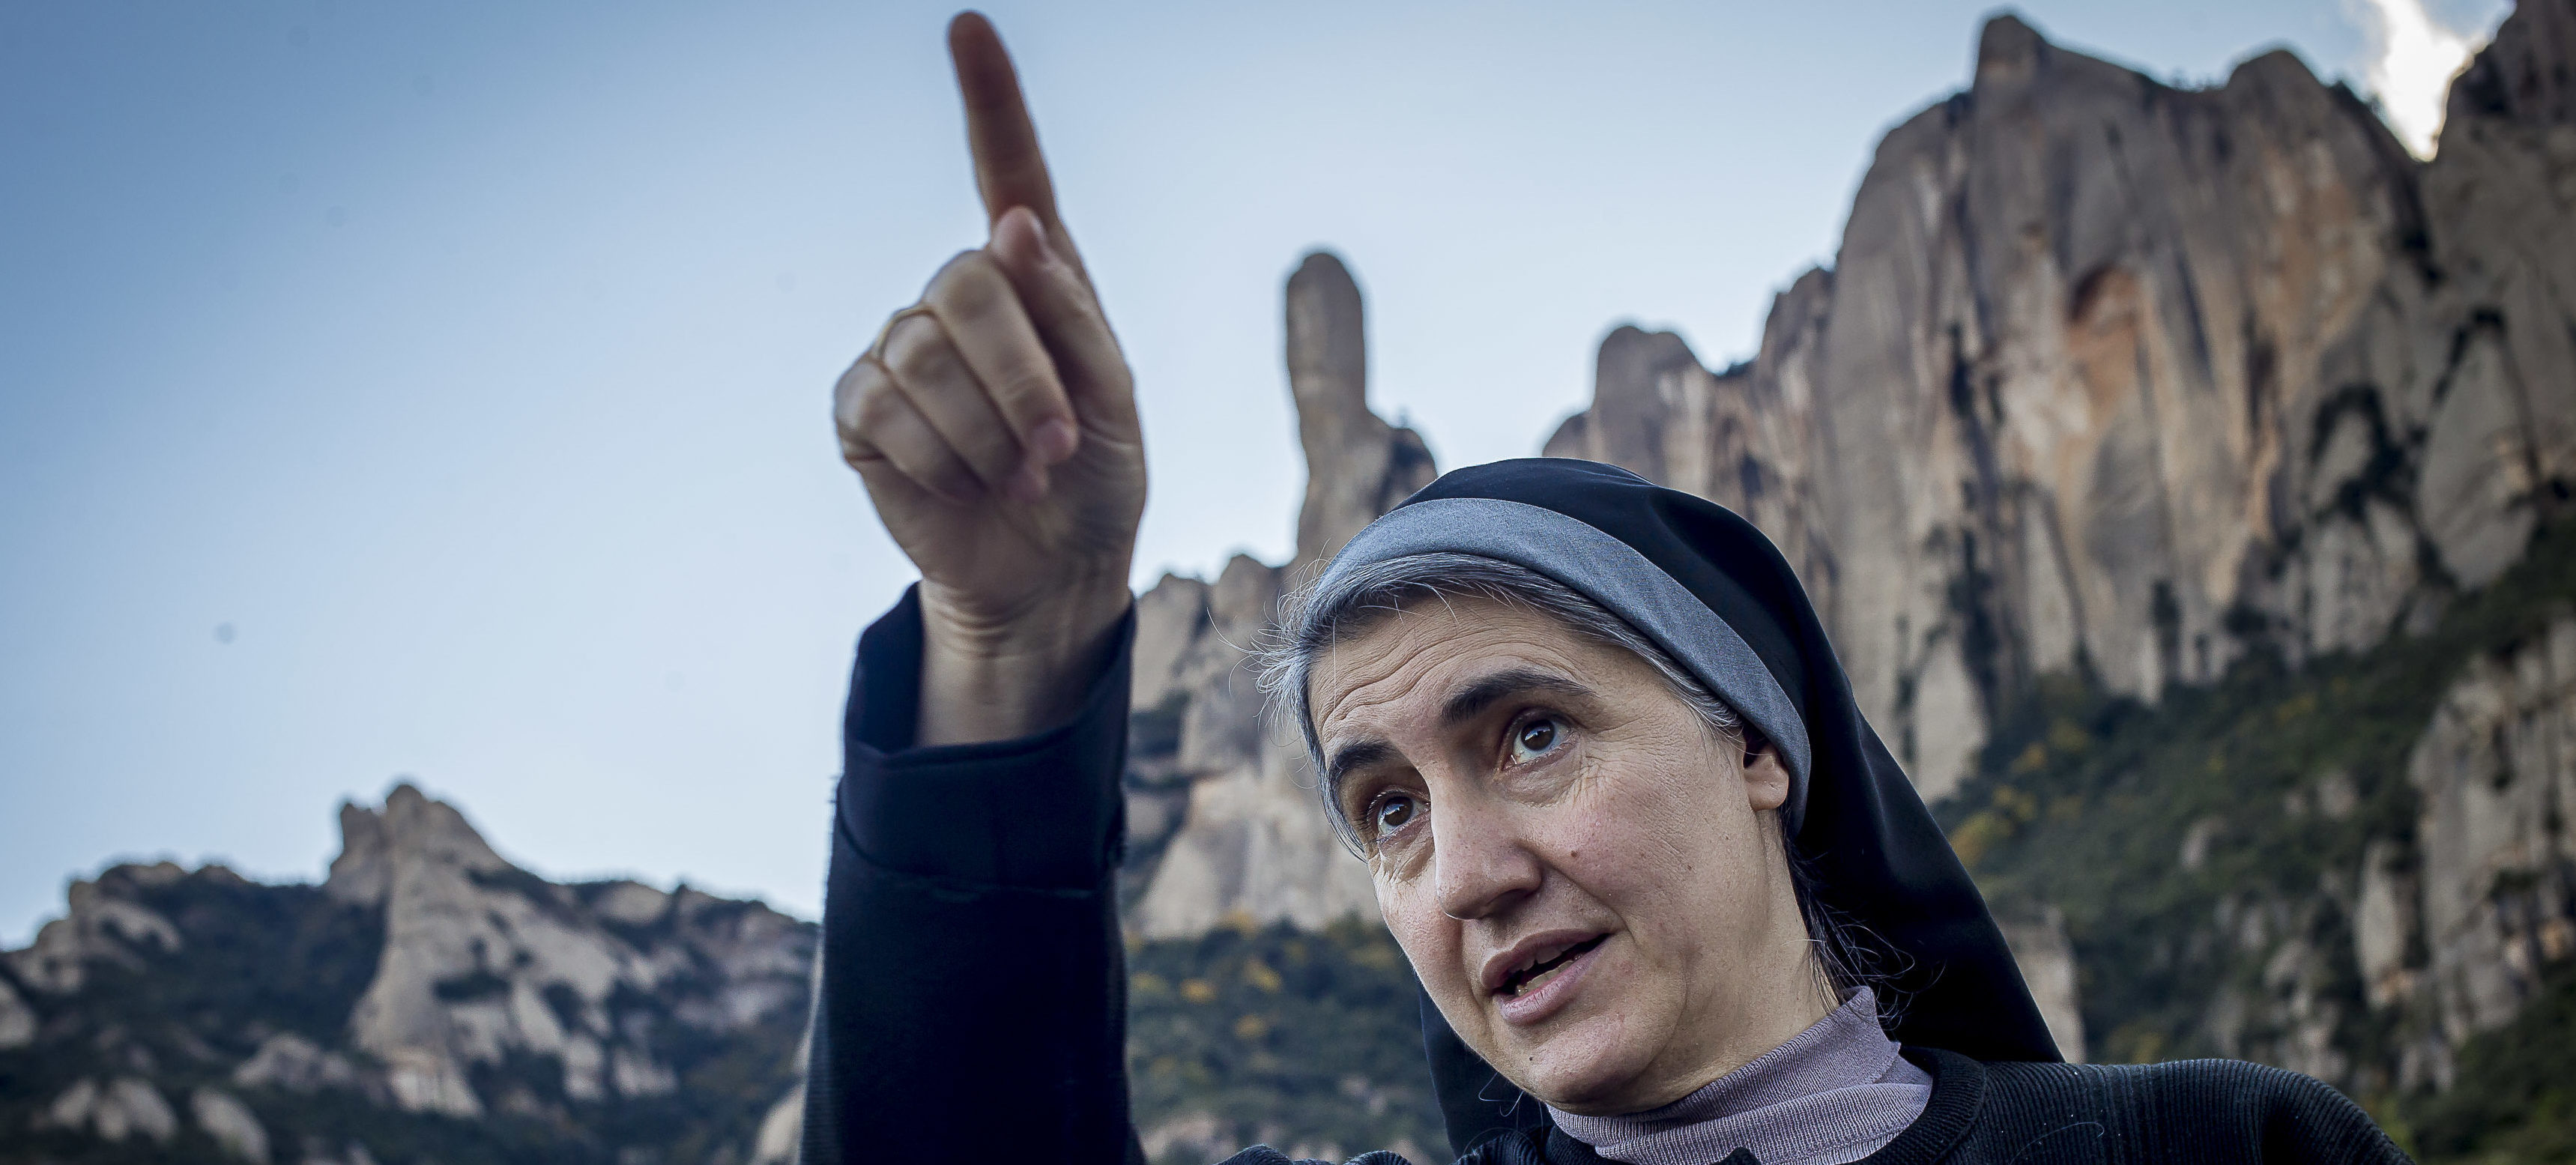 Teresa Forcades, la setmana passada al monestir de Sant Benet de Montserrat (fotografia: Albert Salamé)